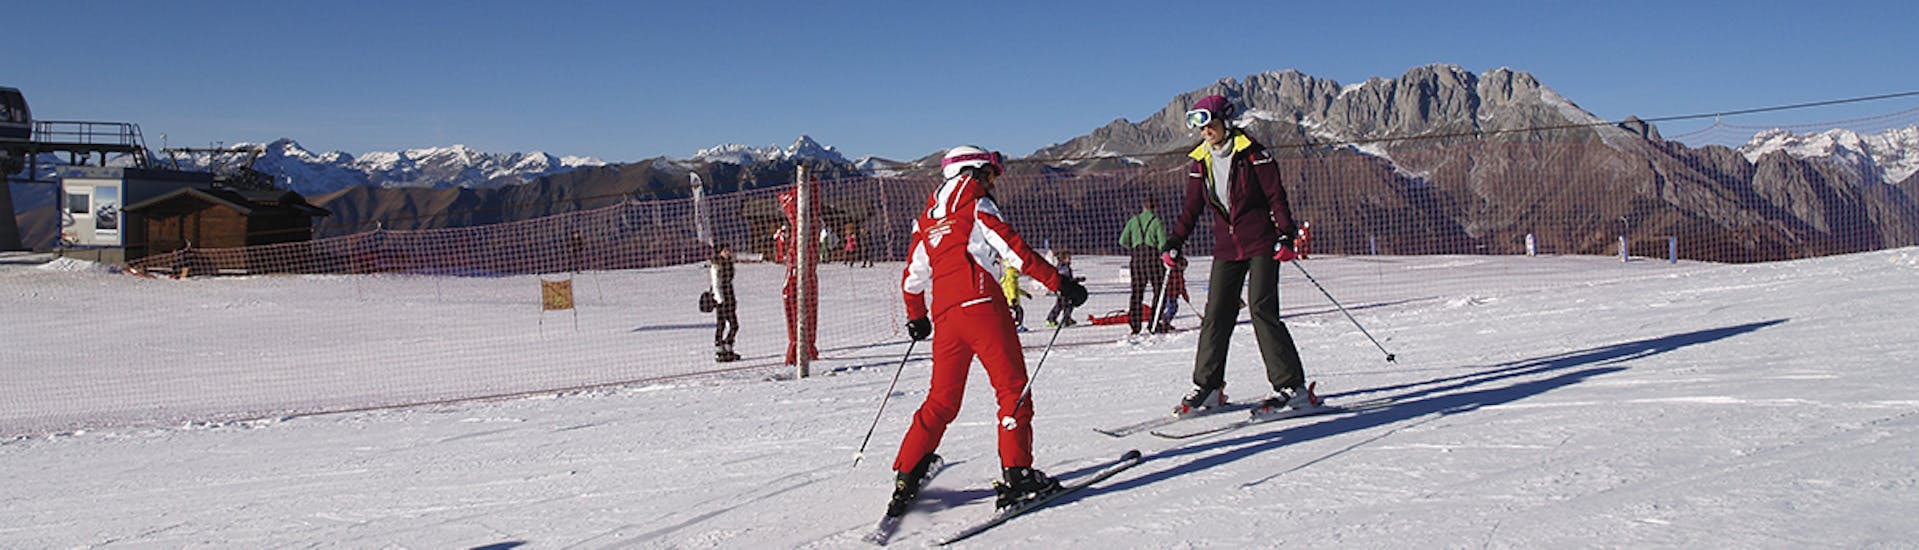 Privé skilessen voor volwassenen vanaf 16 jaar voor alle niveaus.